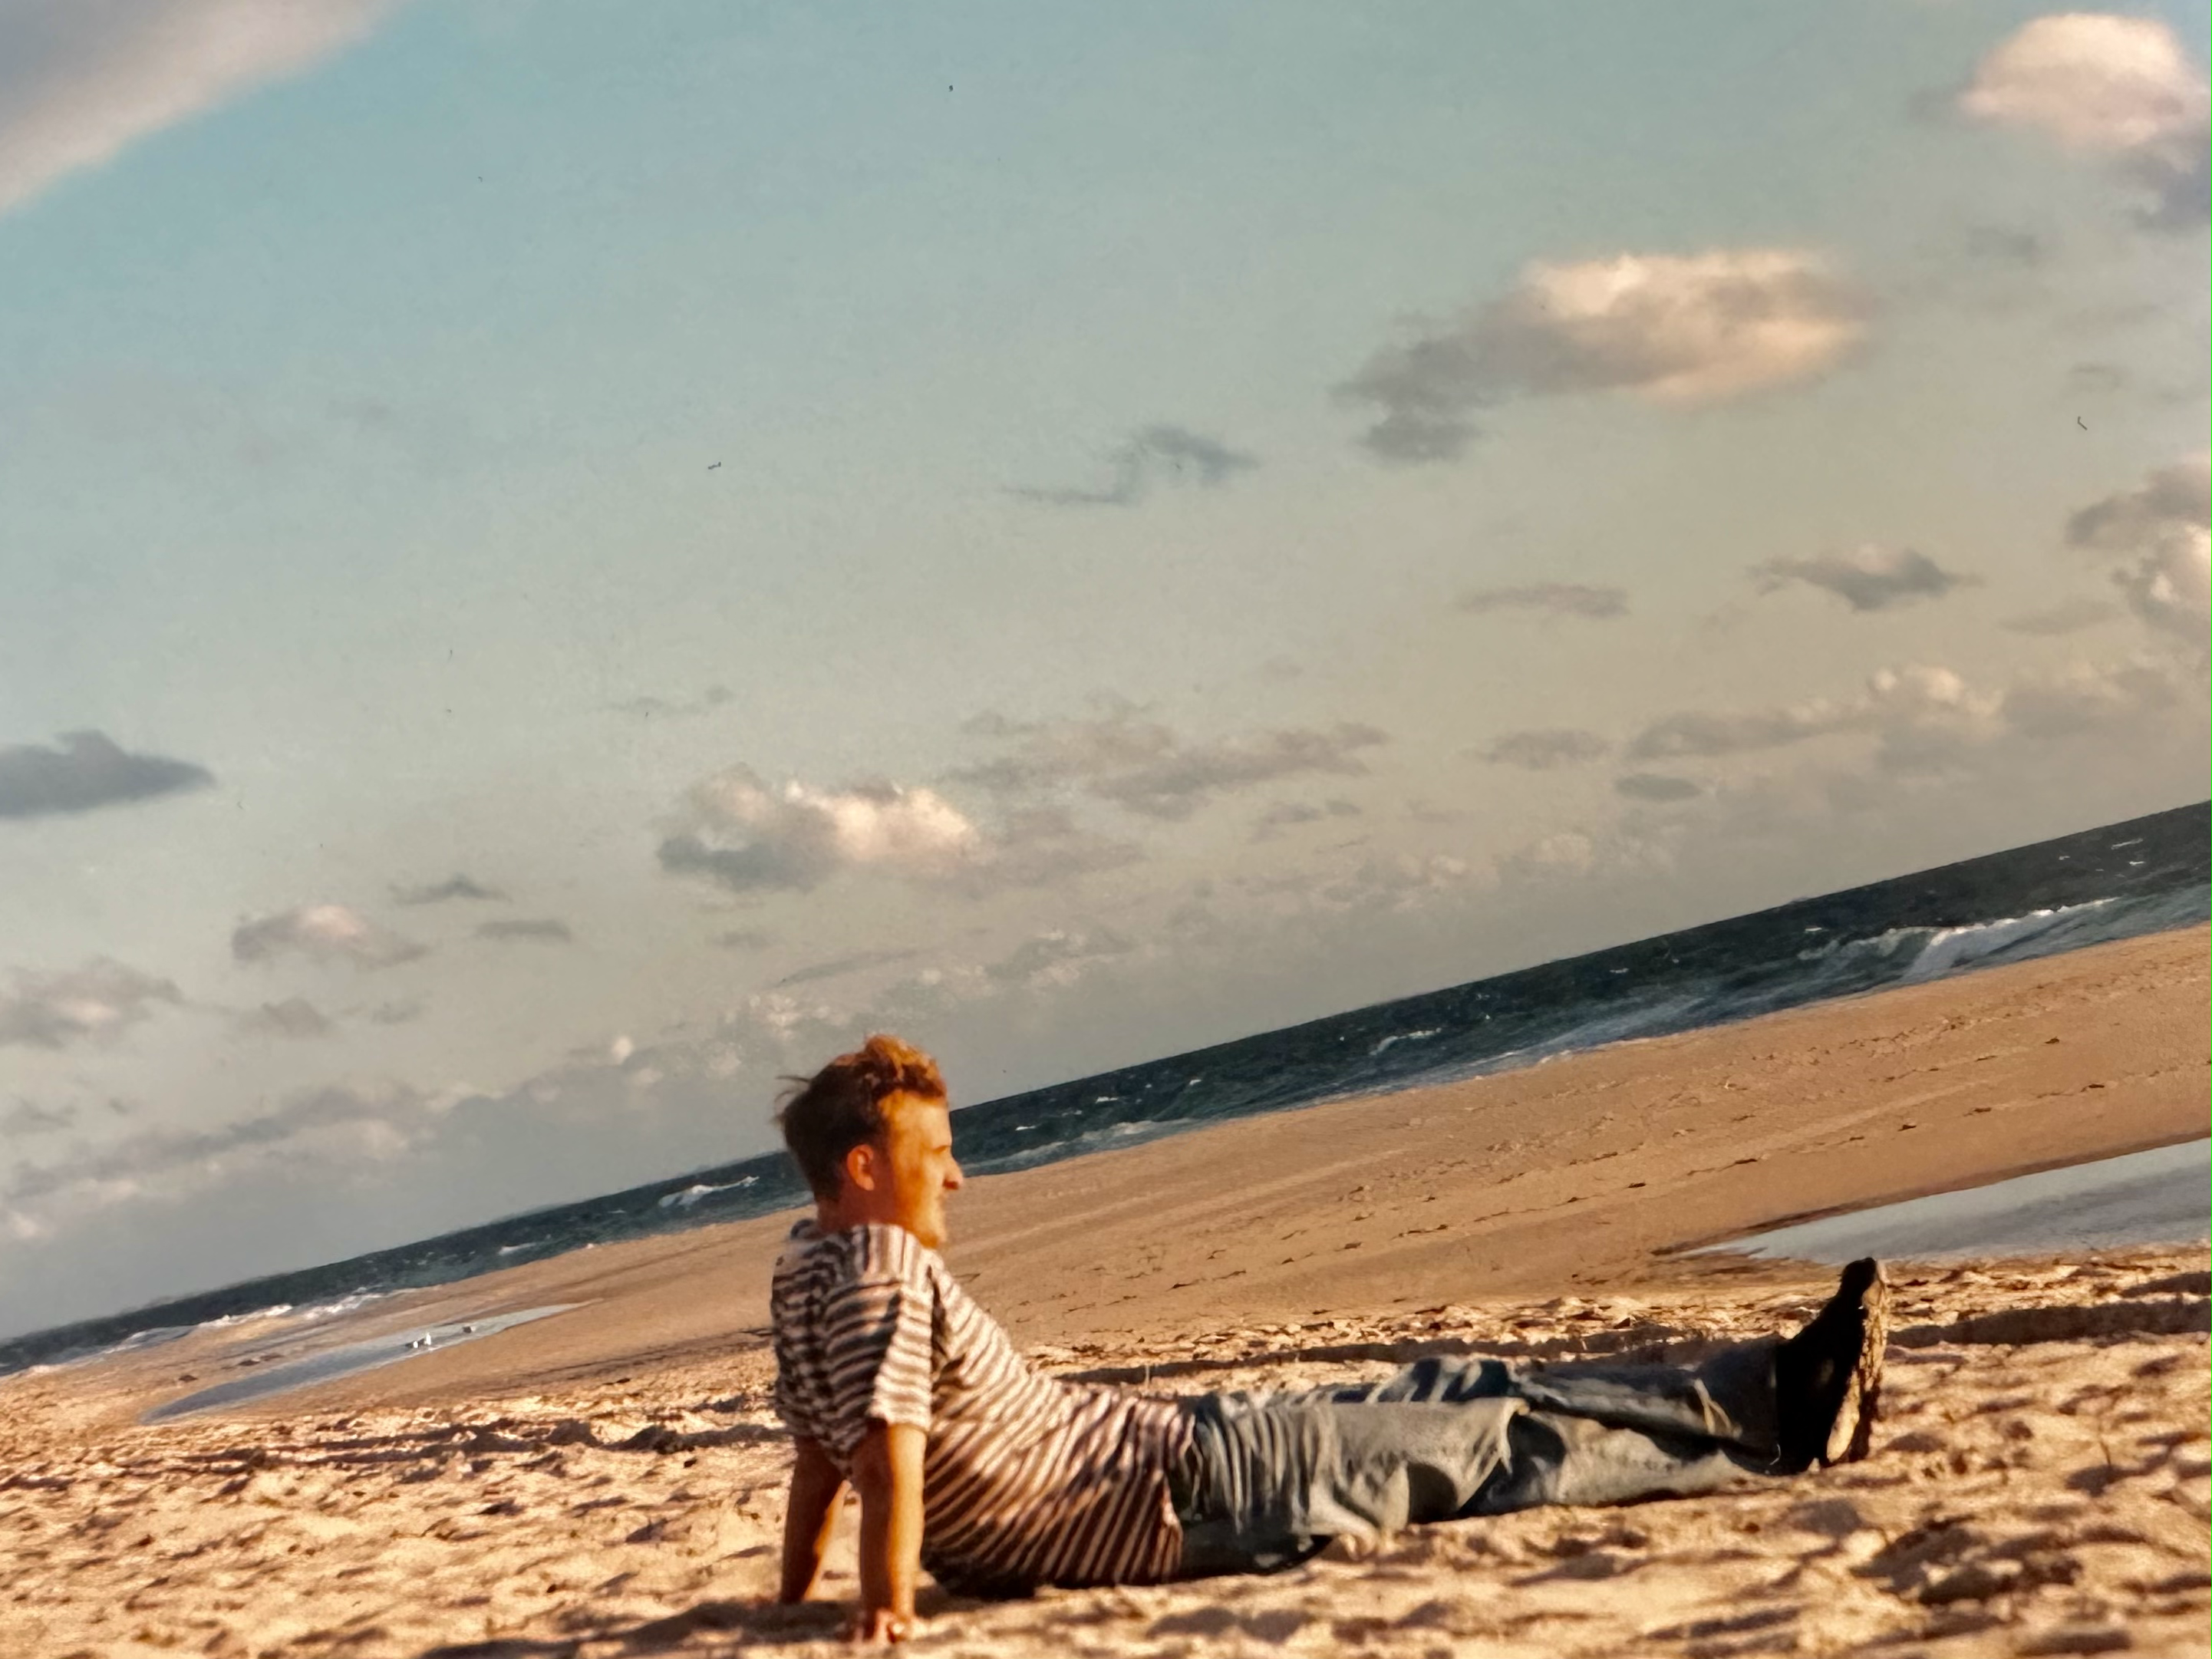 Jon Windall sitting on the beach in Australia